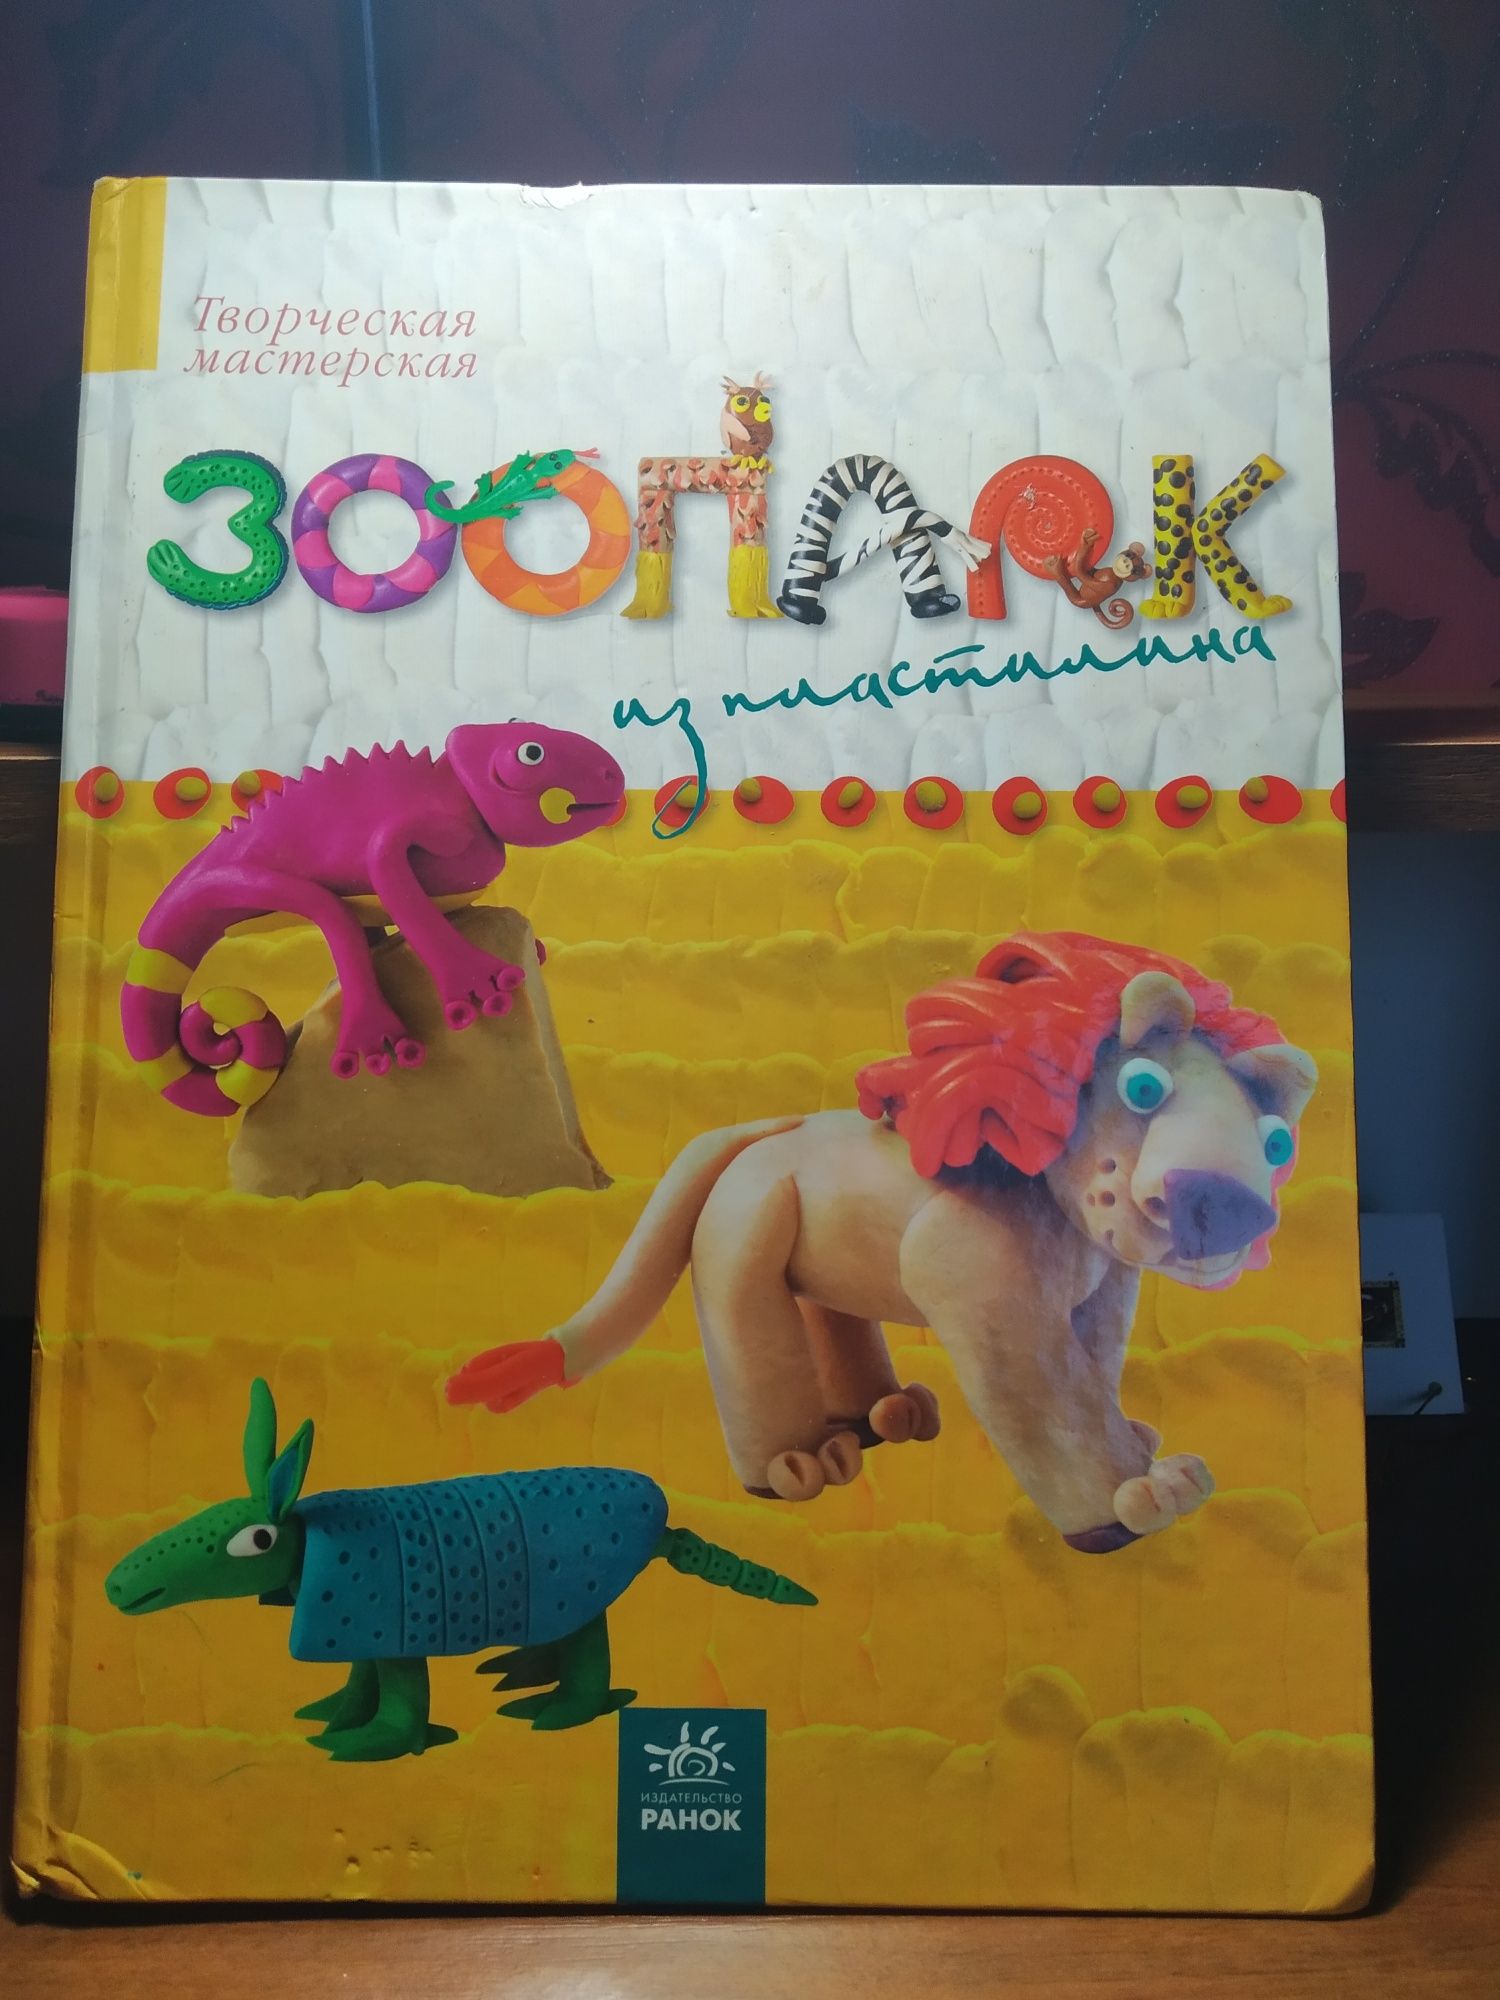 Продам книгу "Зоопарк из пластилина"